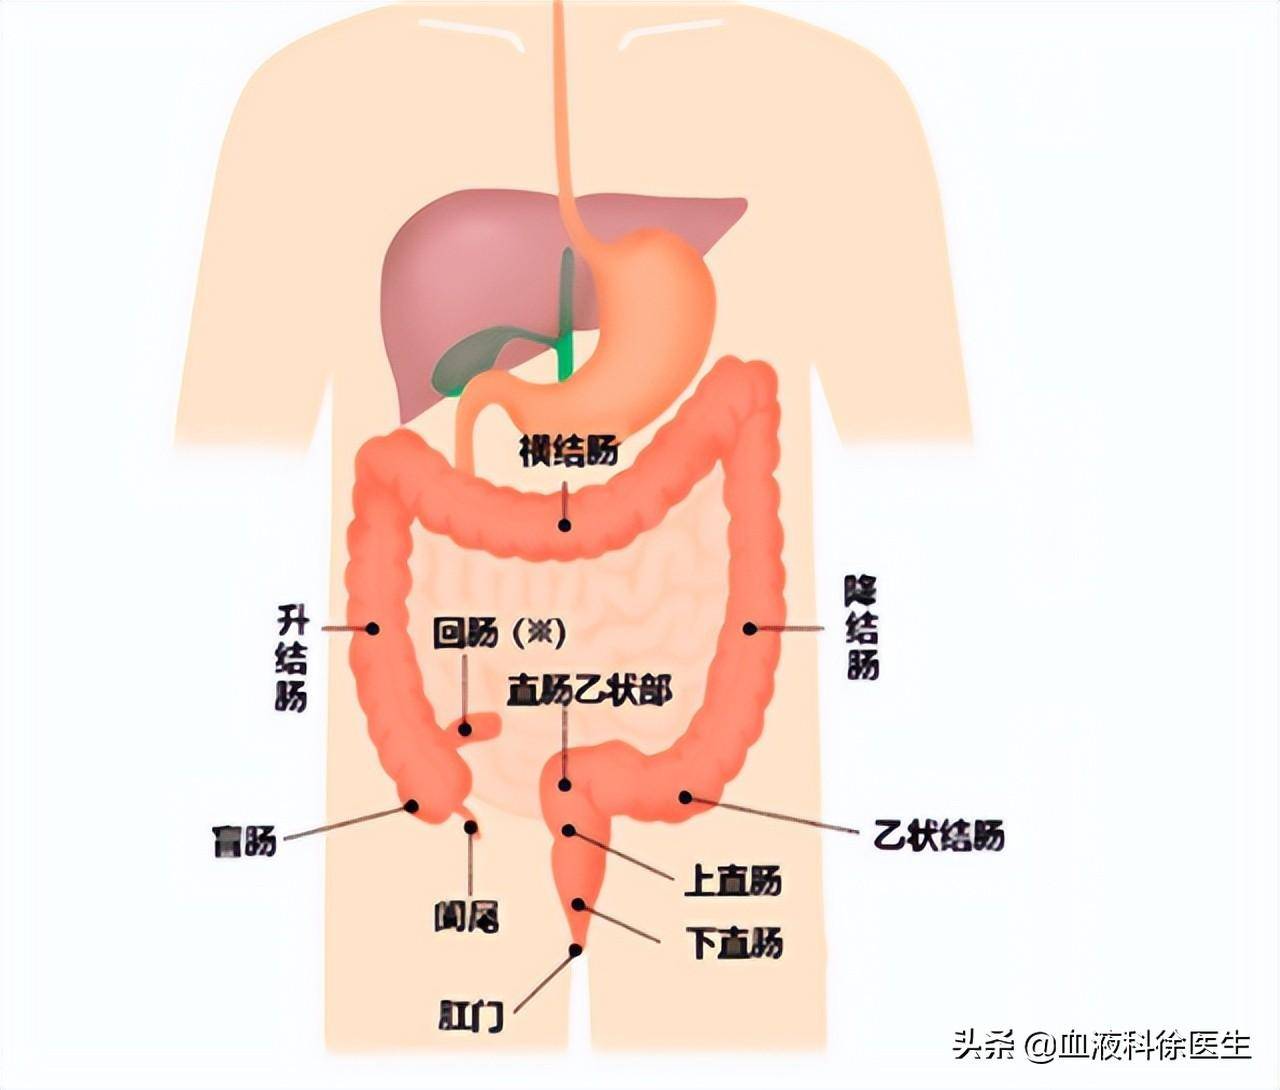 直肠病的发生率占整个大肠的40%,若再加上乙状结肠则占60%左右,升结肠